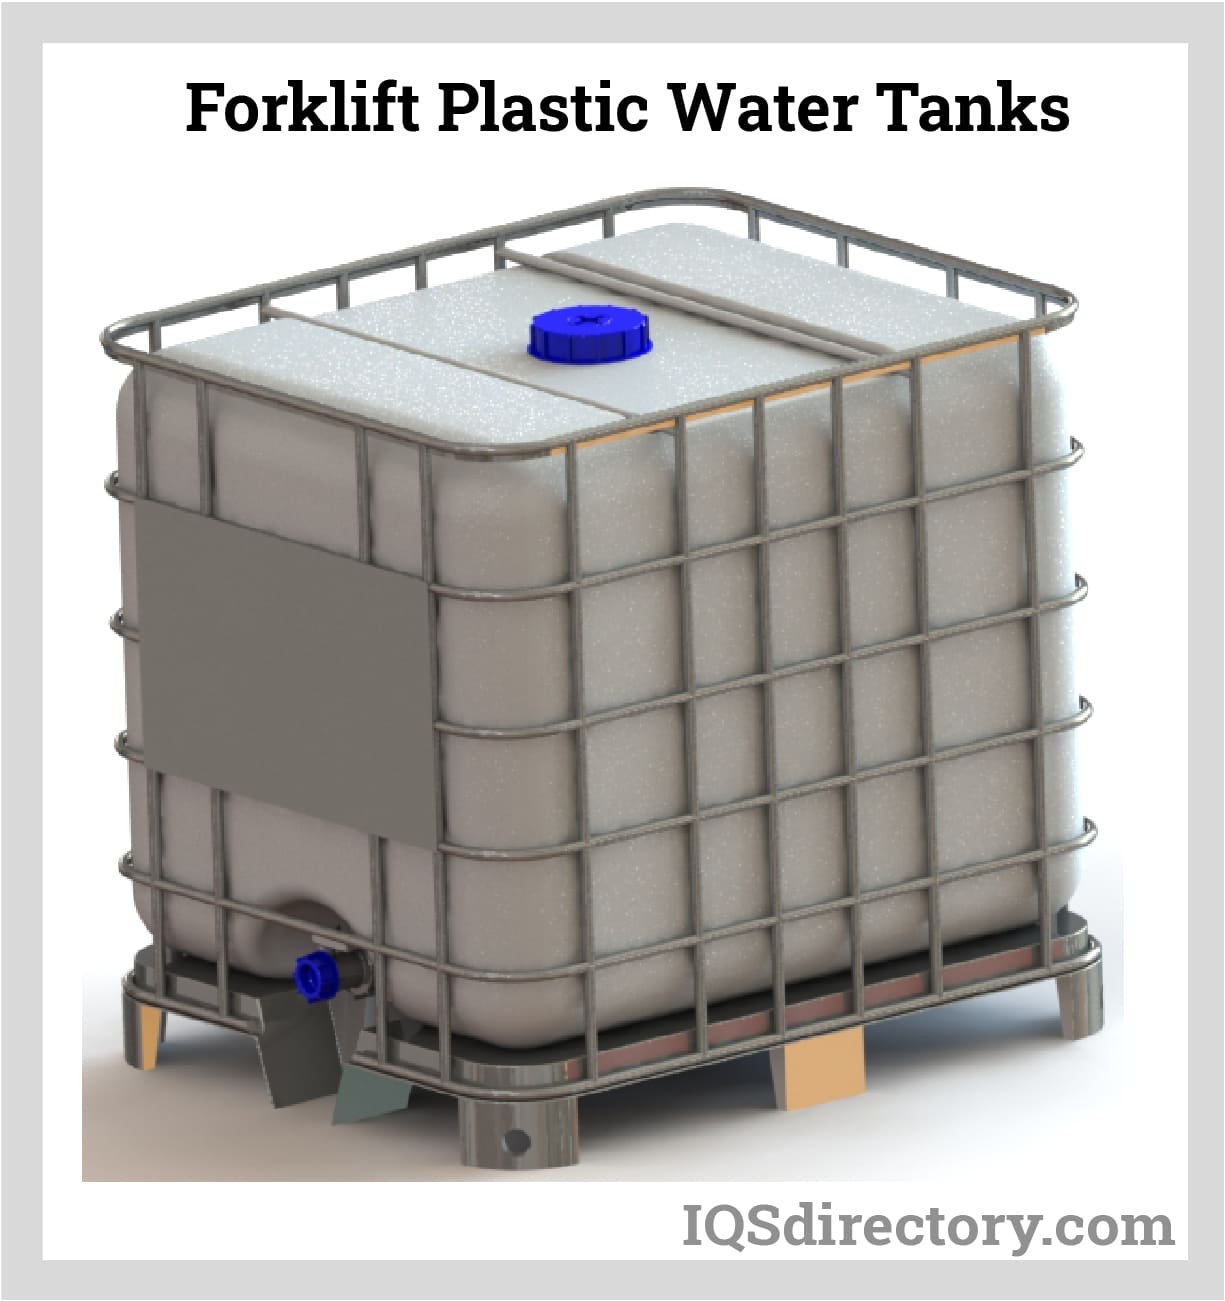 Forklift Plastic Water Tanks